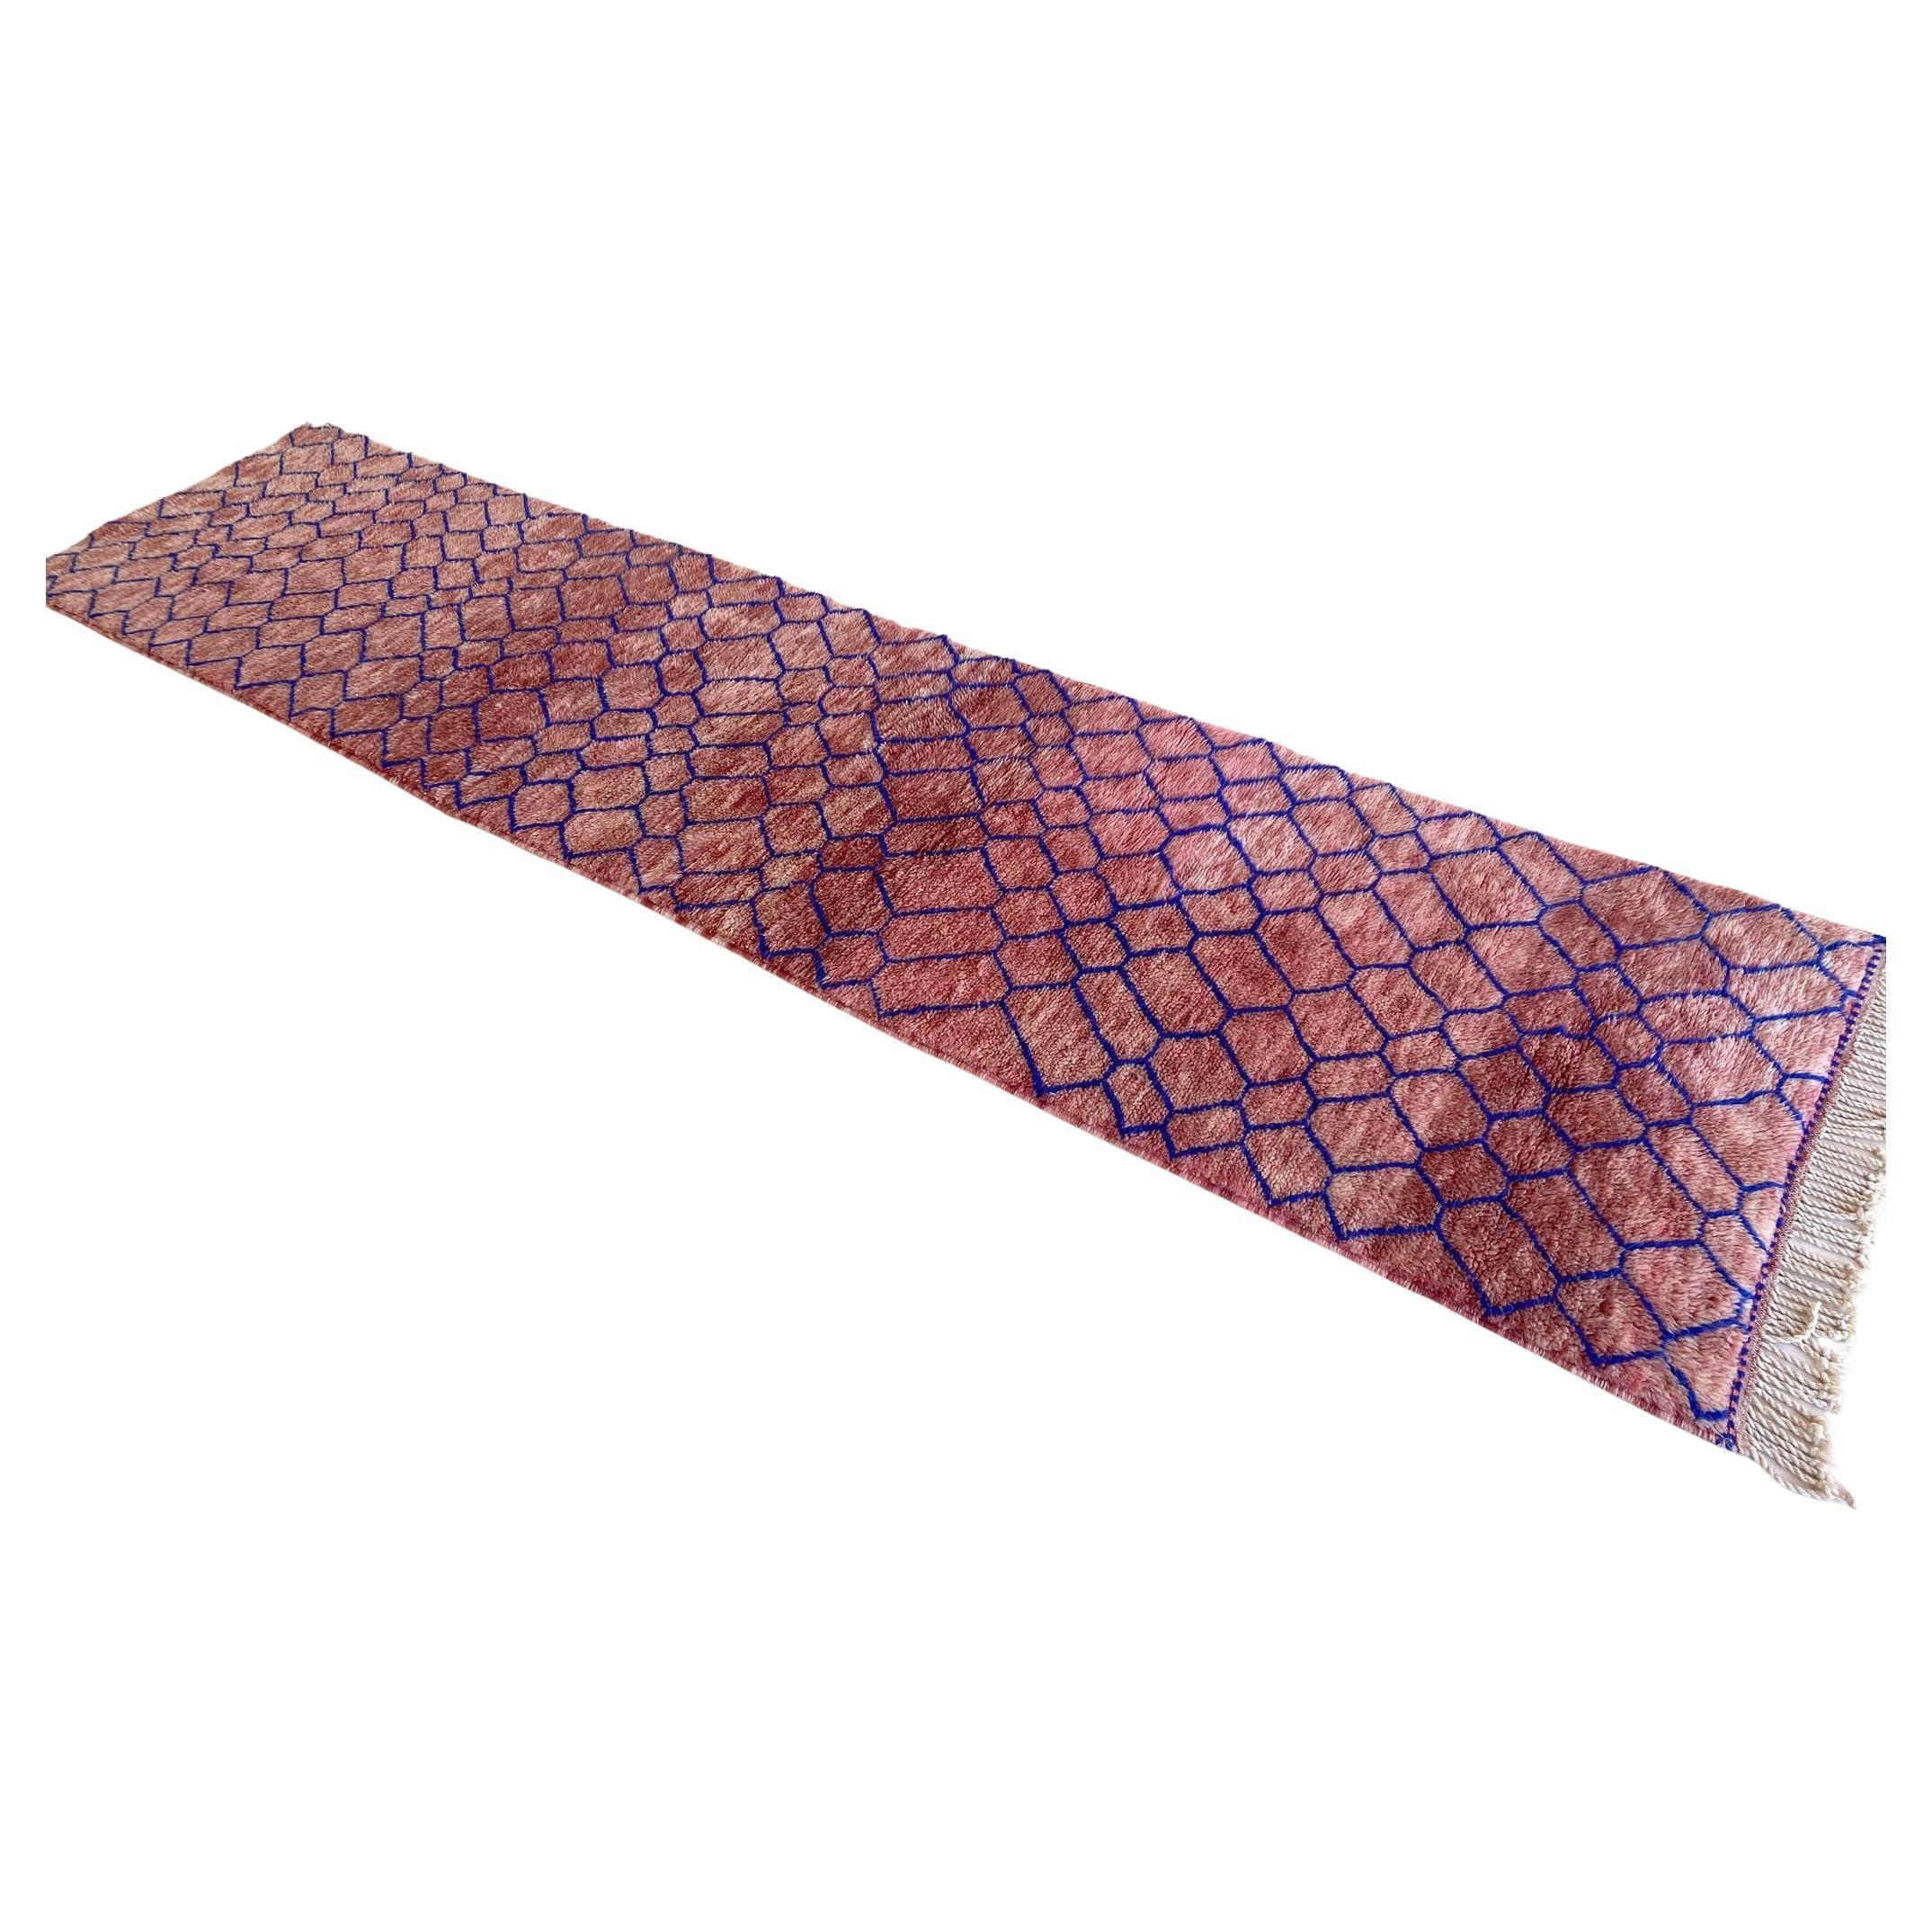 Modern Moroccan wool Mrirt runner rug - Pink/blue - 3.1x13.4feet / 95x408cm For Sale